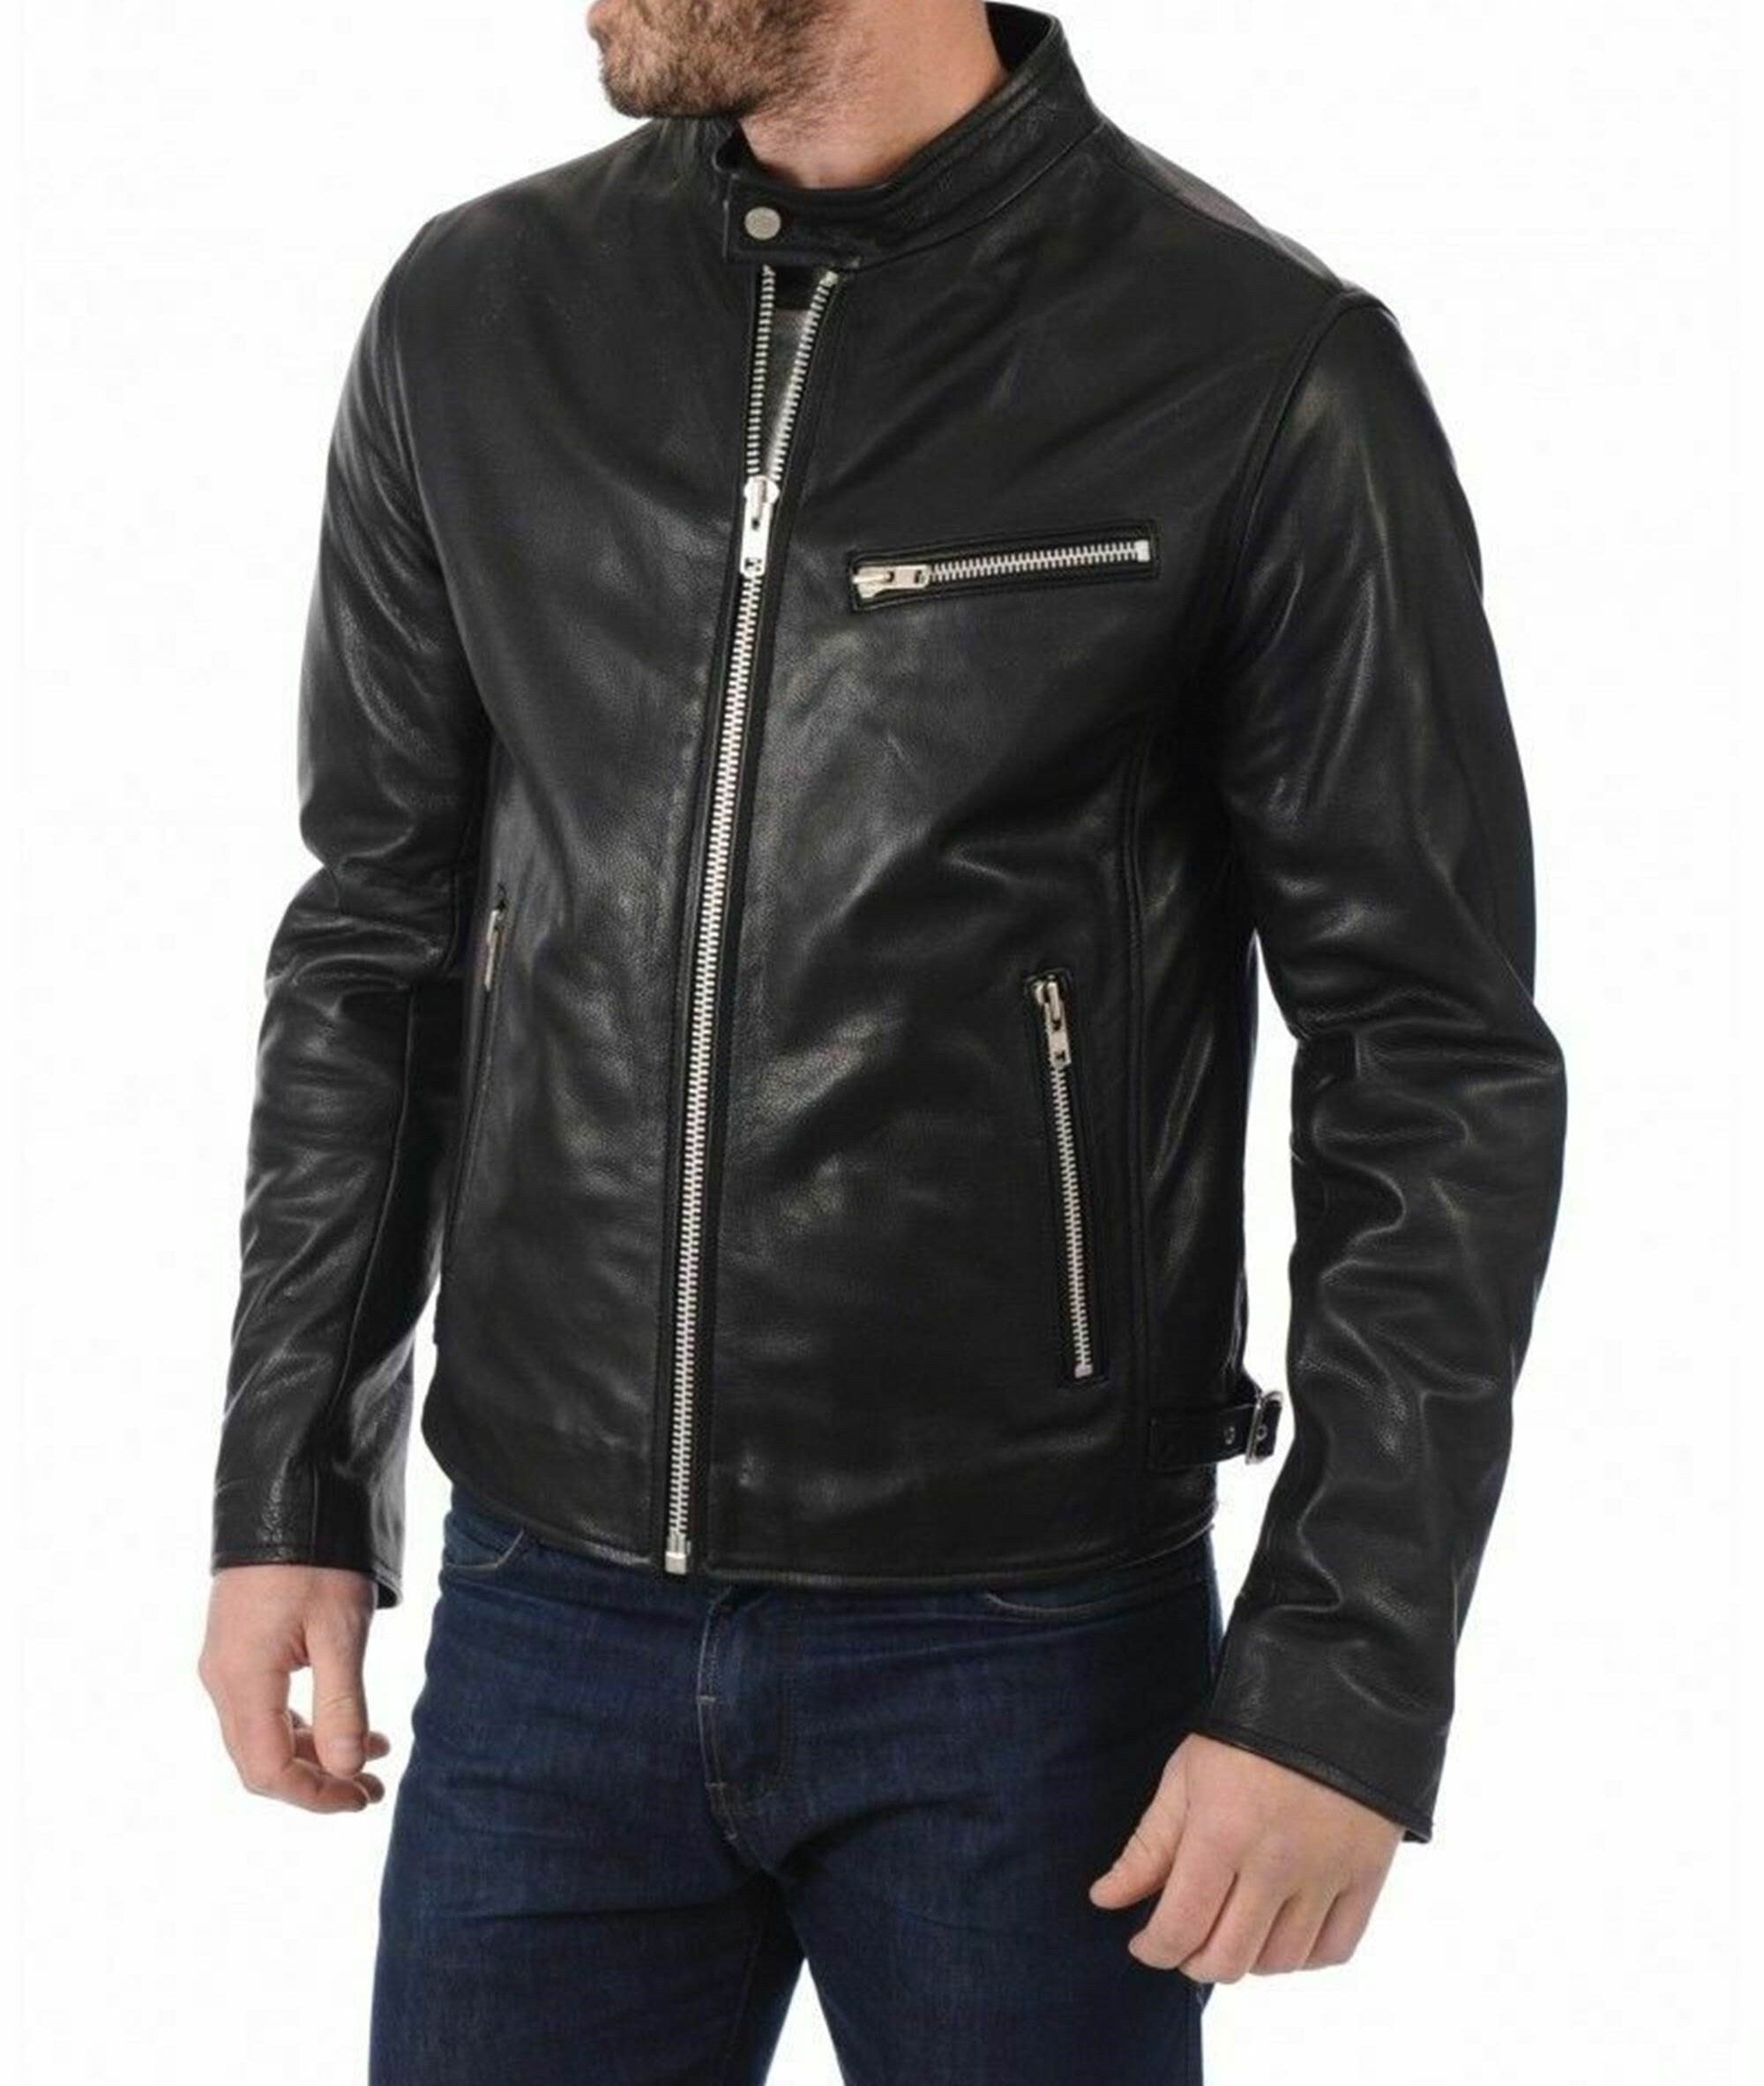 Black Leather Jacket Men Vintage jacket